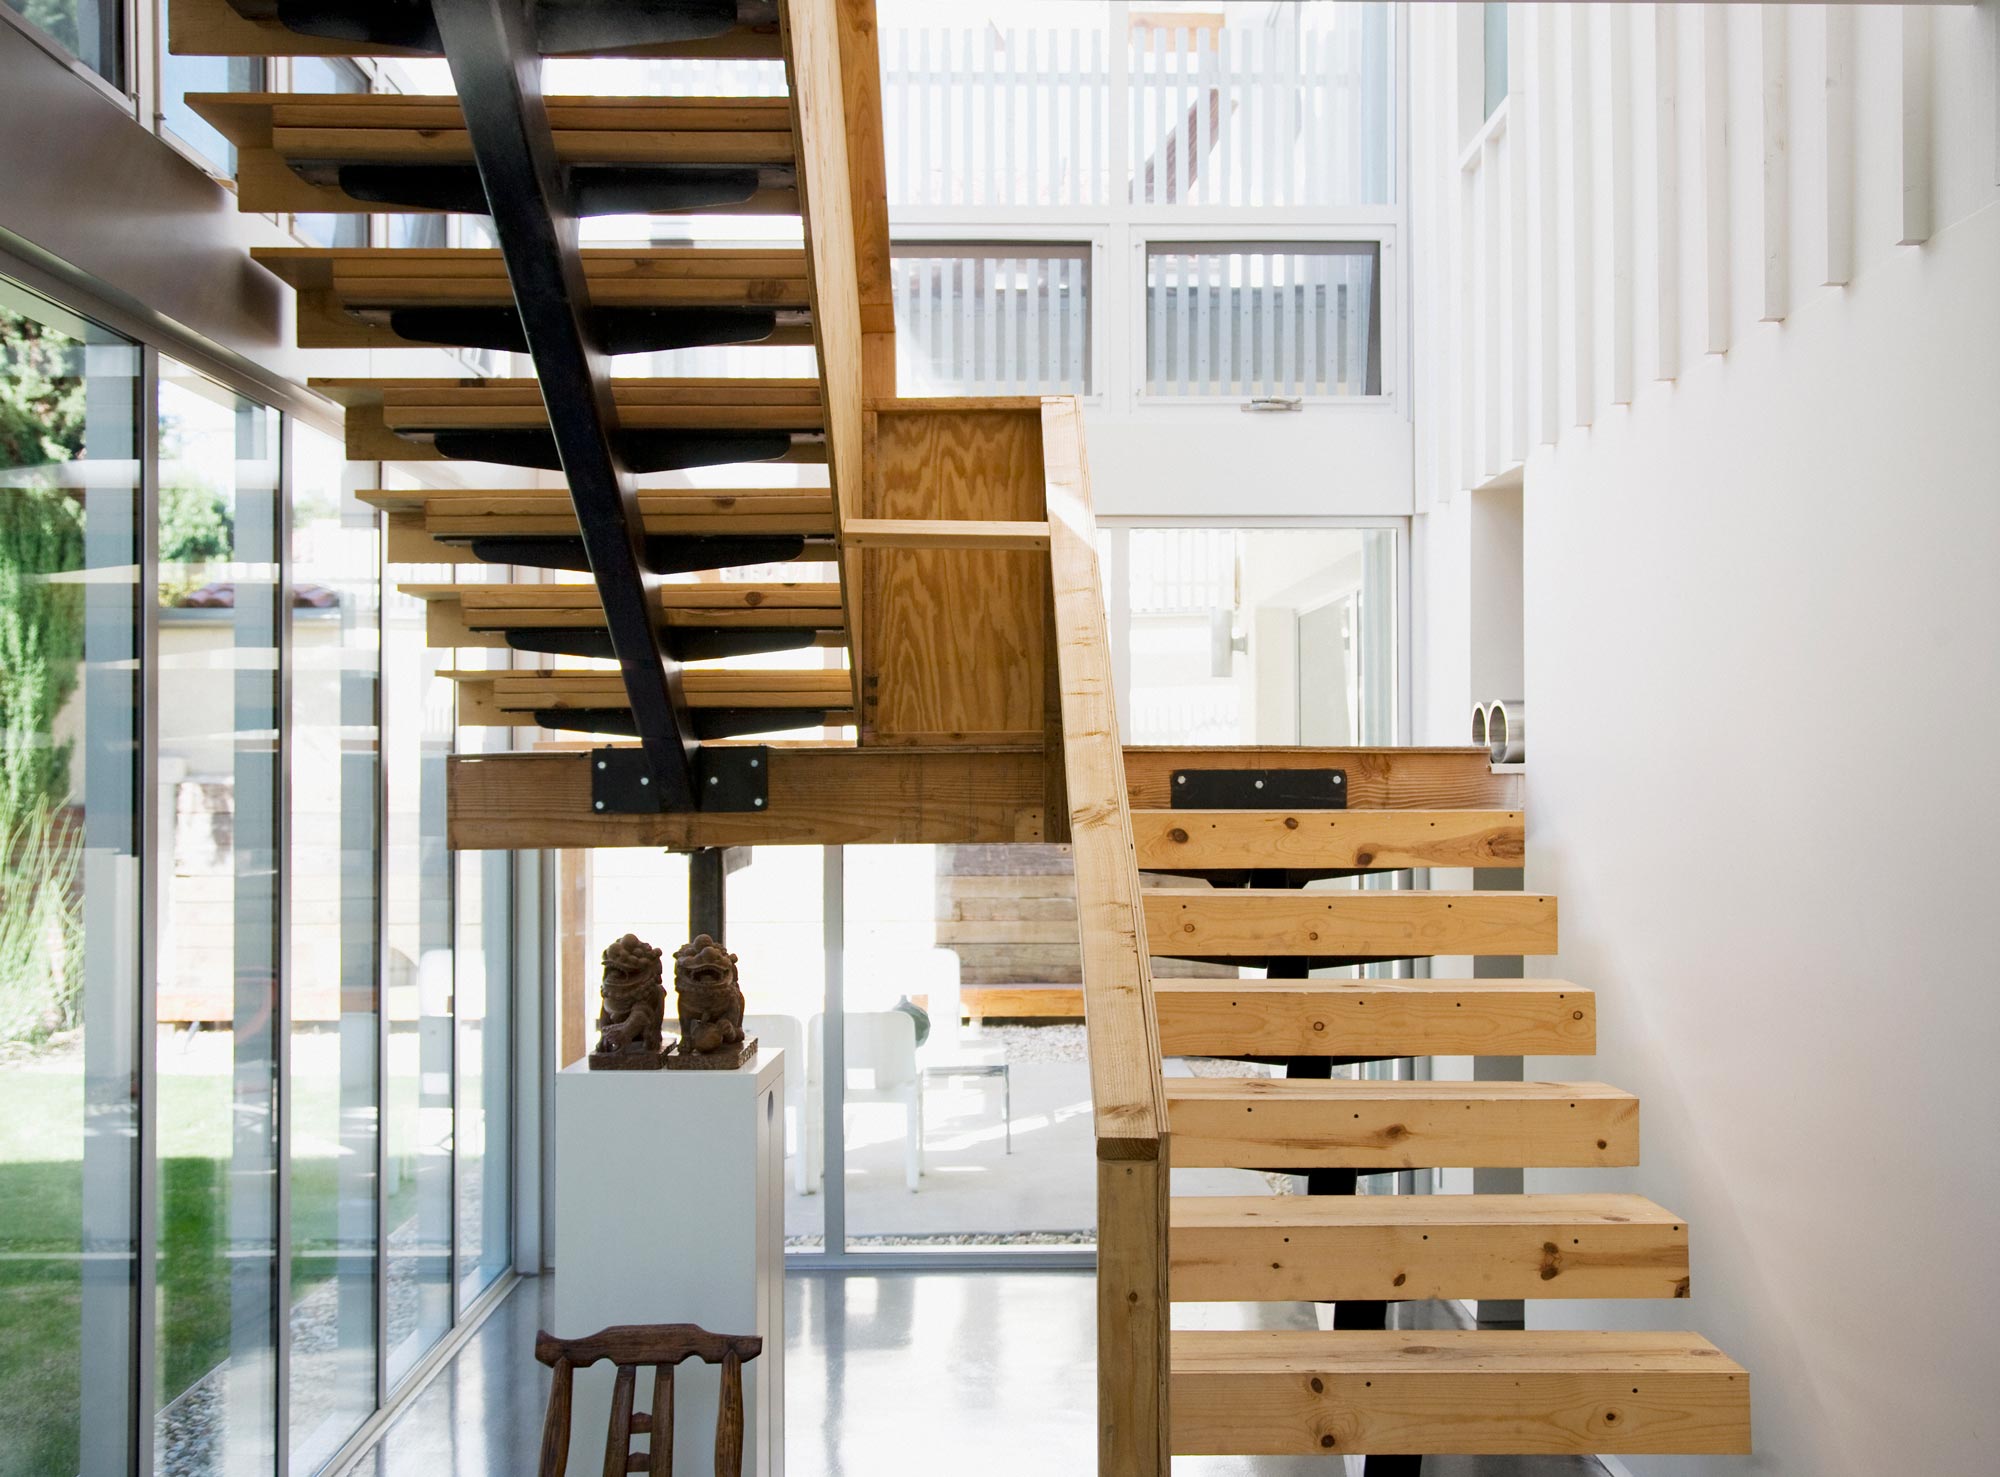 Webb & Baker Luxury Estate Management staircase